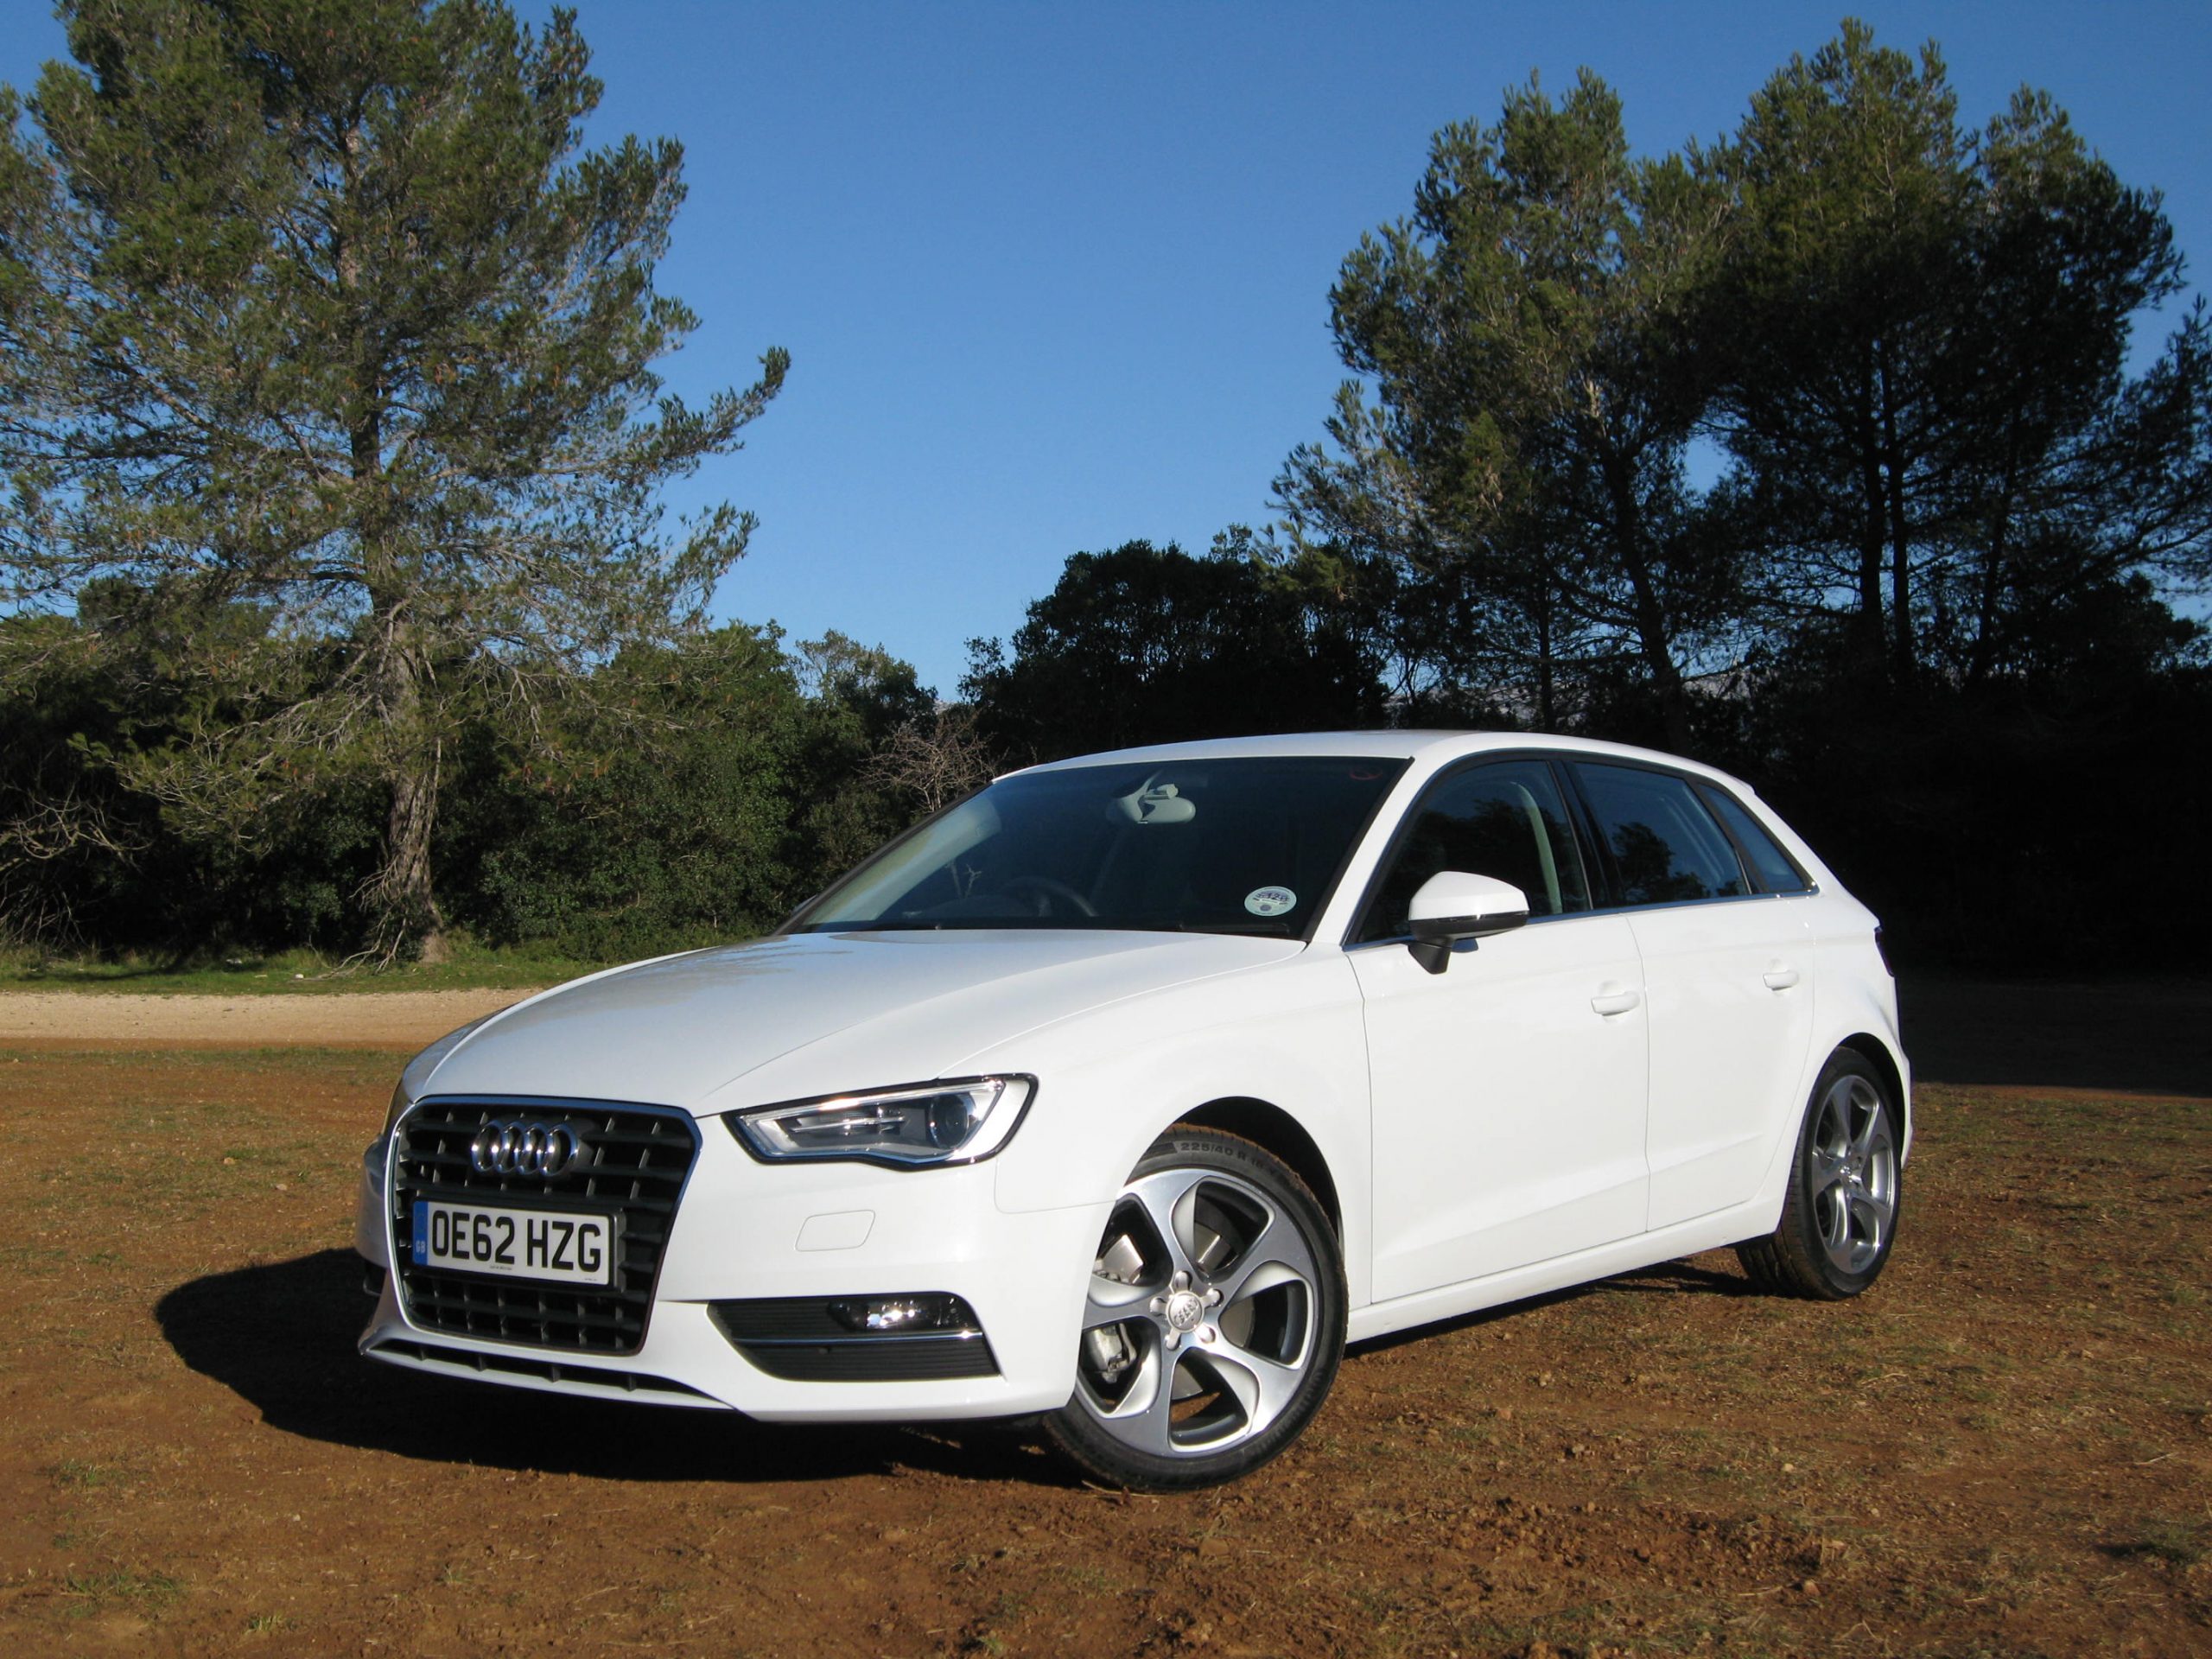 Audi A3 Sportback 2.0 TDI (2013) long-term test review